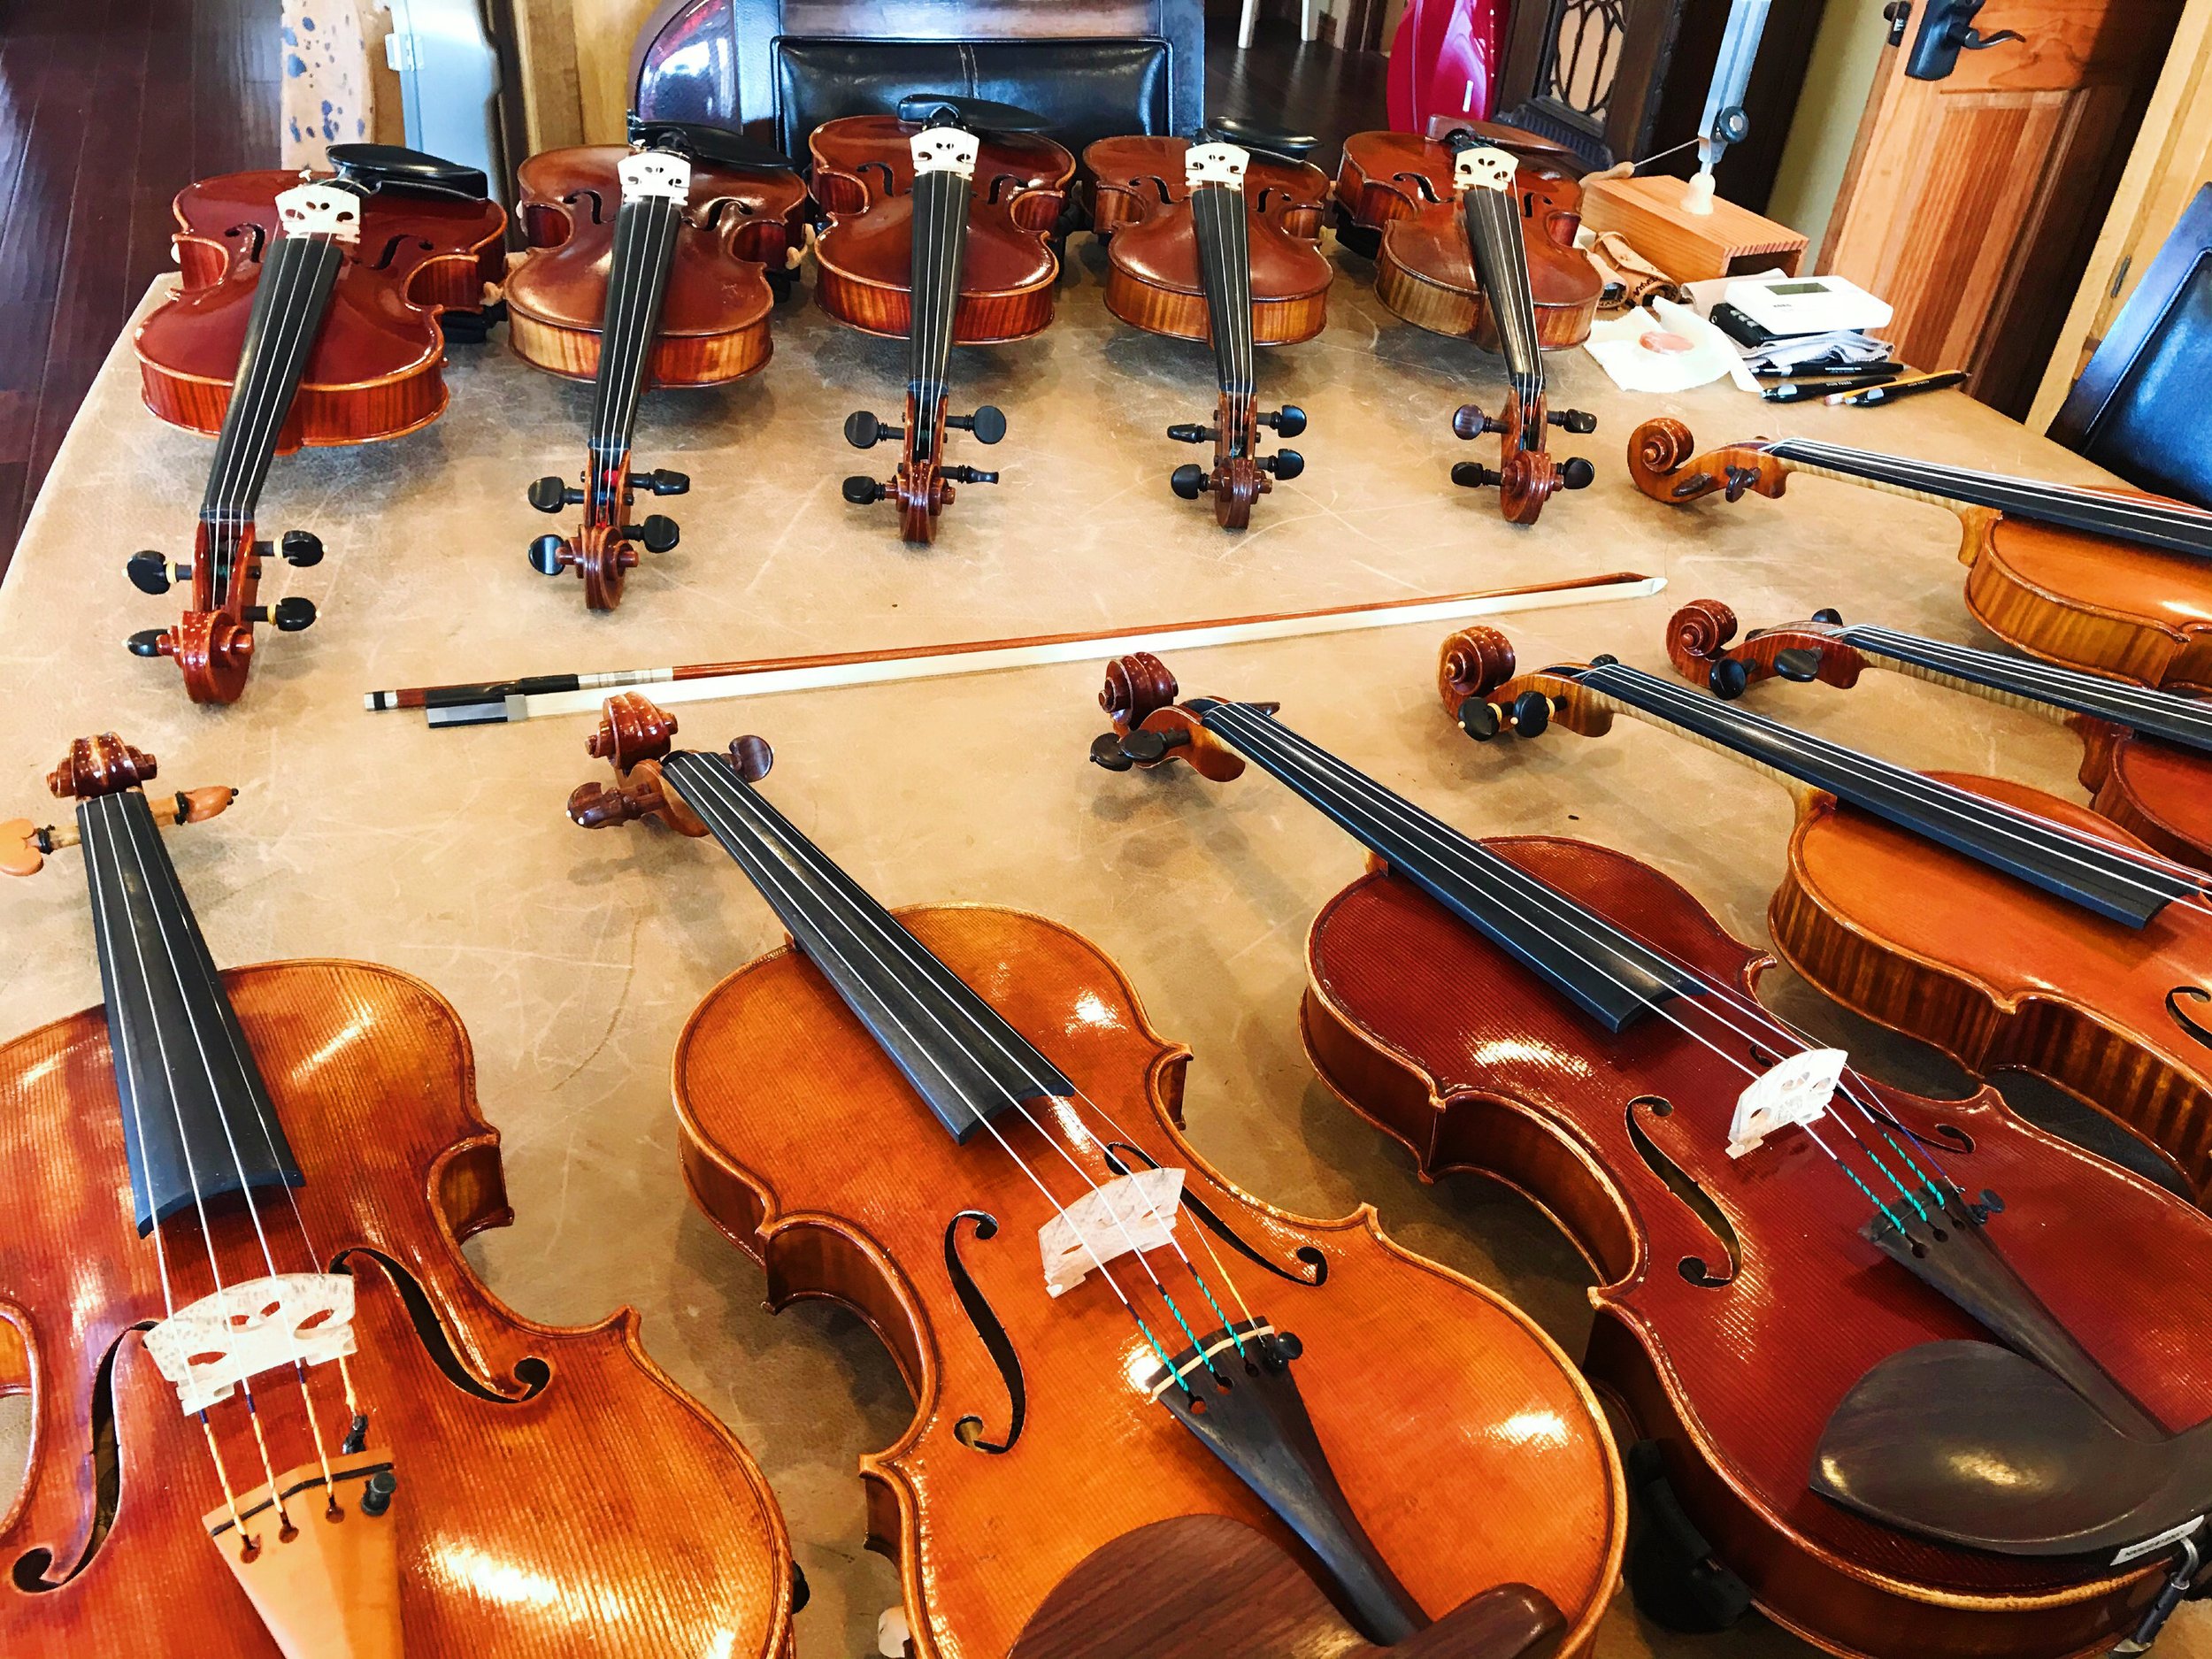 Terra Nova Violins - The Shop in Texas